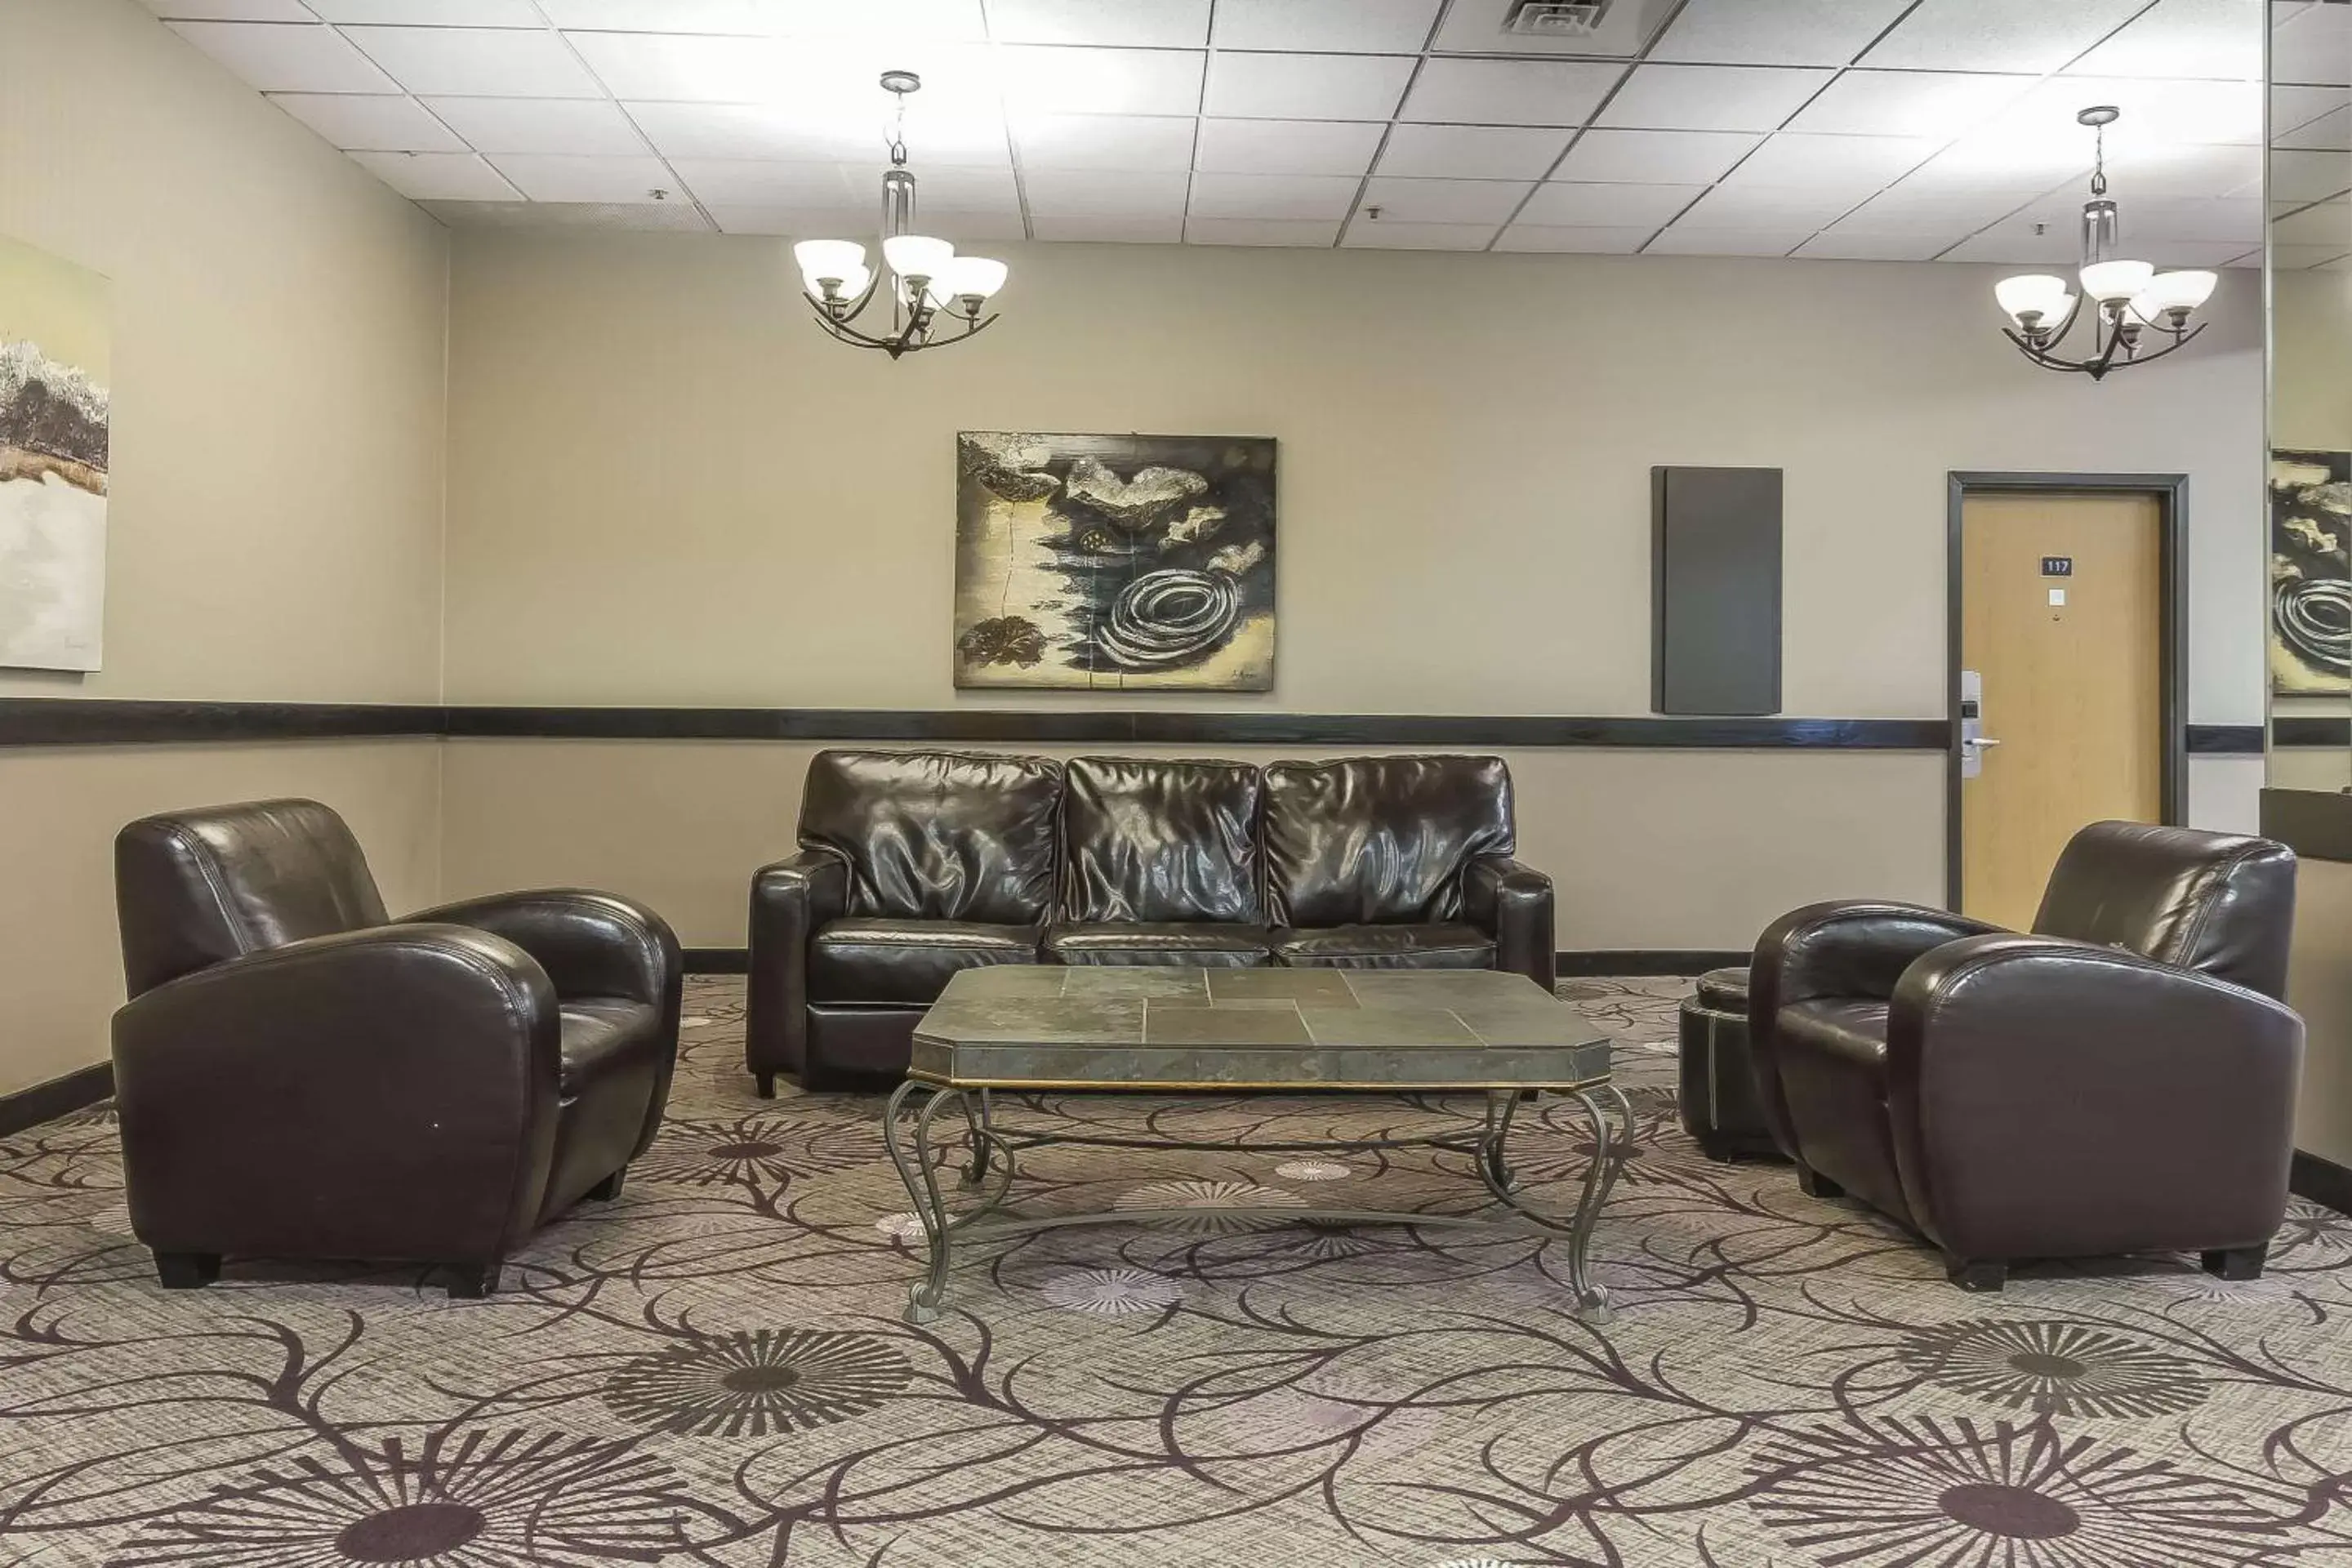 Lobby or reception, Lobby/Reception in Quality Inn & Suites Saskatoon